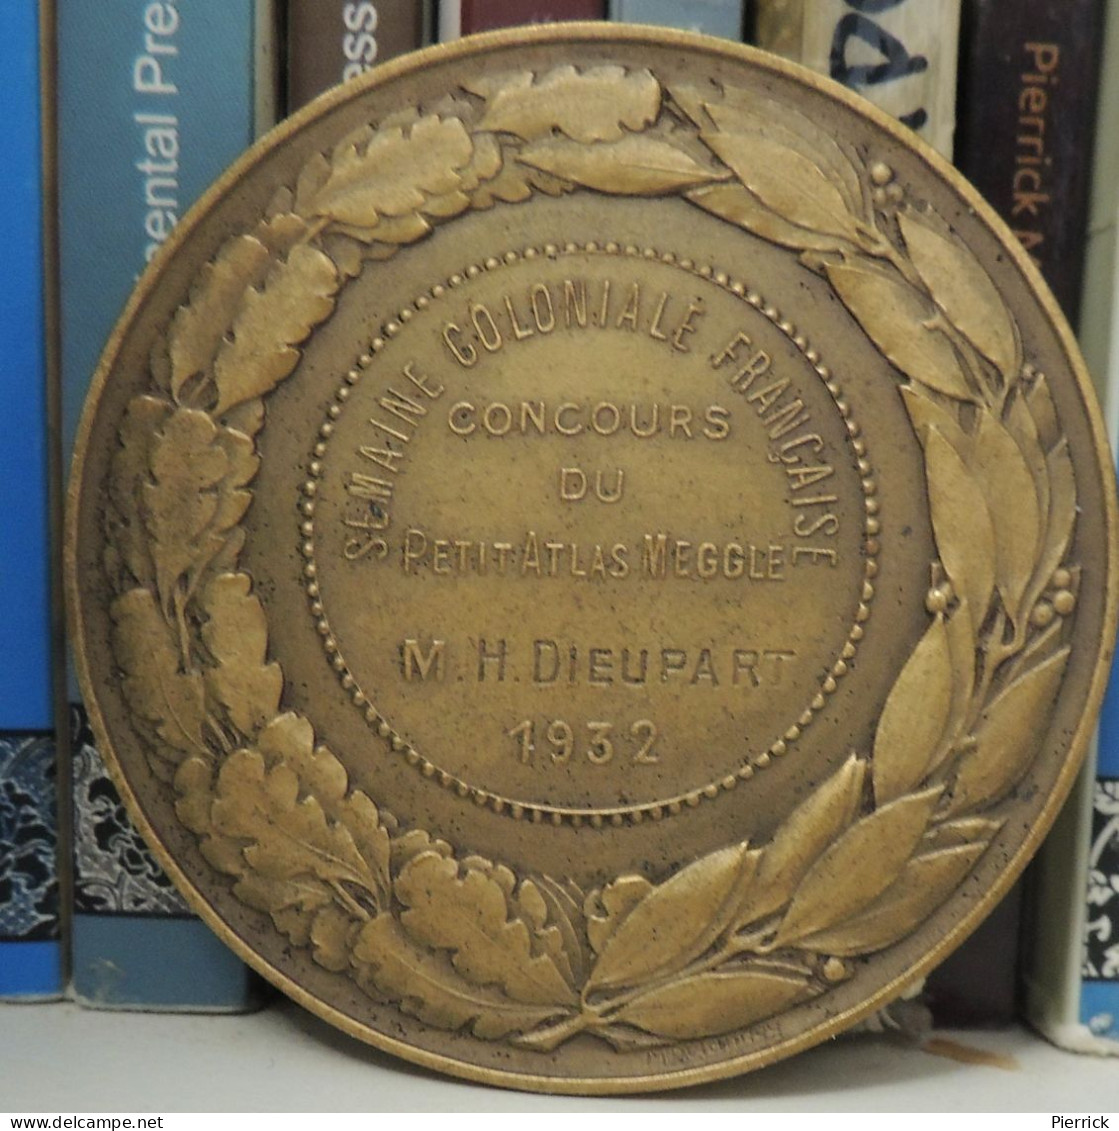 Médaille Semaine Coloniale Française Du Petit Atlas Français Megglé, Bronze, L. Desvignes 1932 - Professionals/Firms